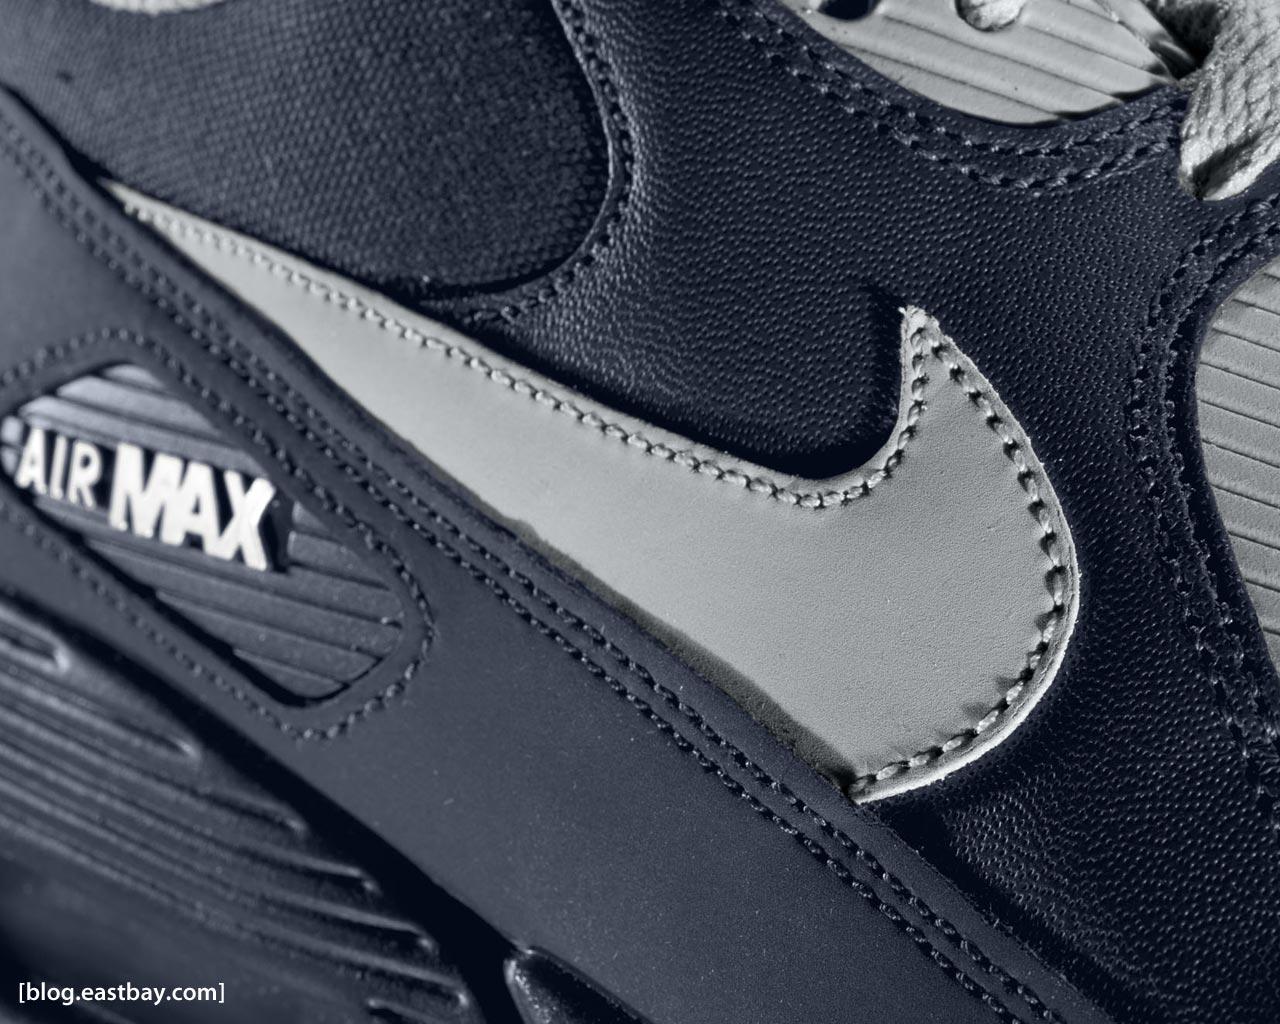 Wallpaper: Nike Air Max 90 Sneak Peek. Eastbay Blog, Eastbay Blog